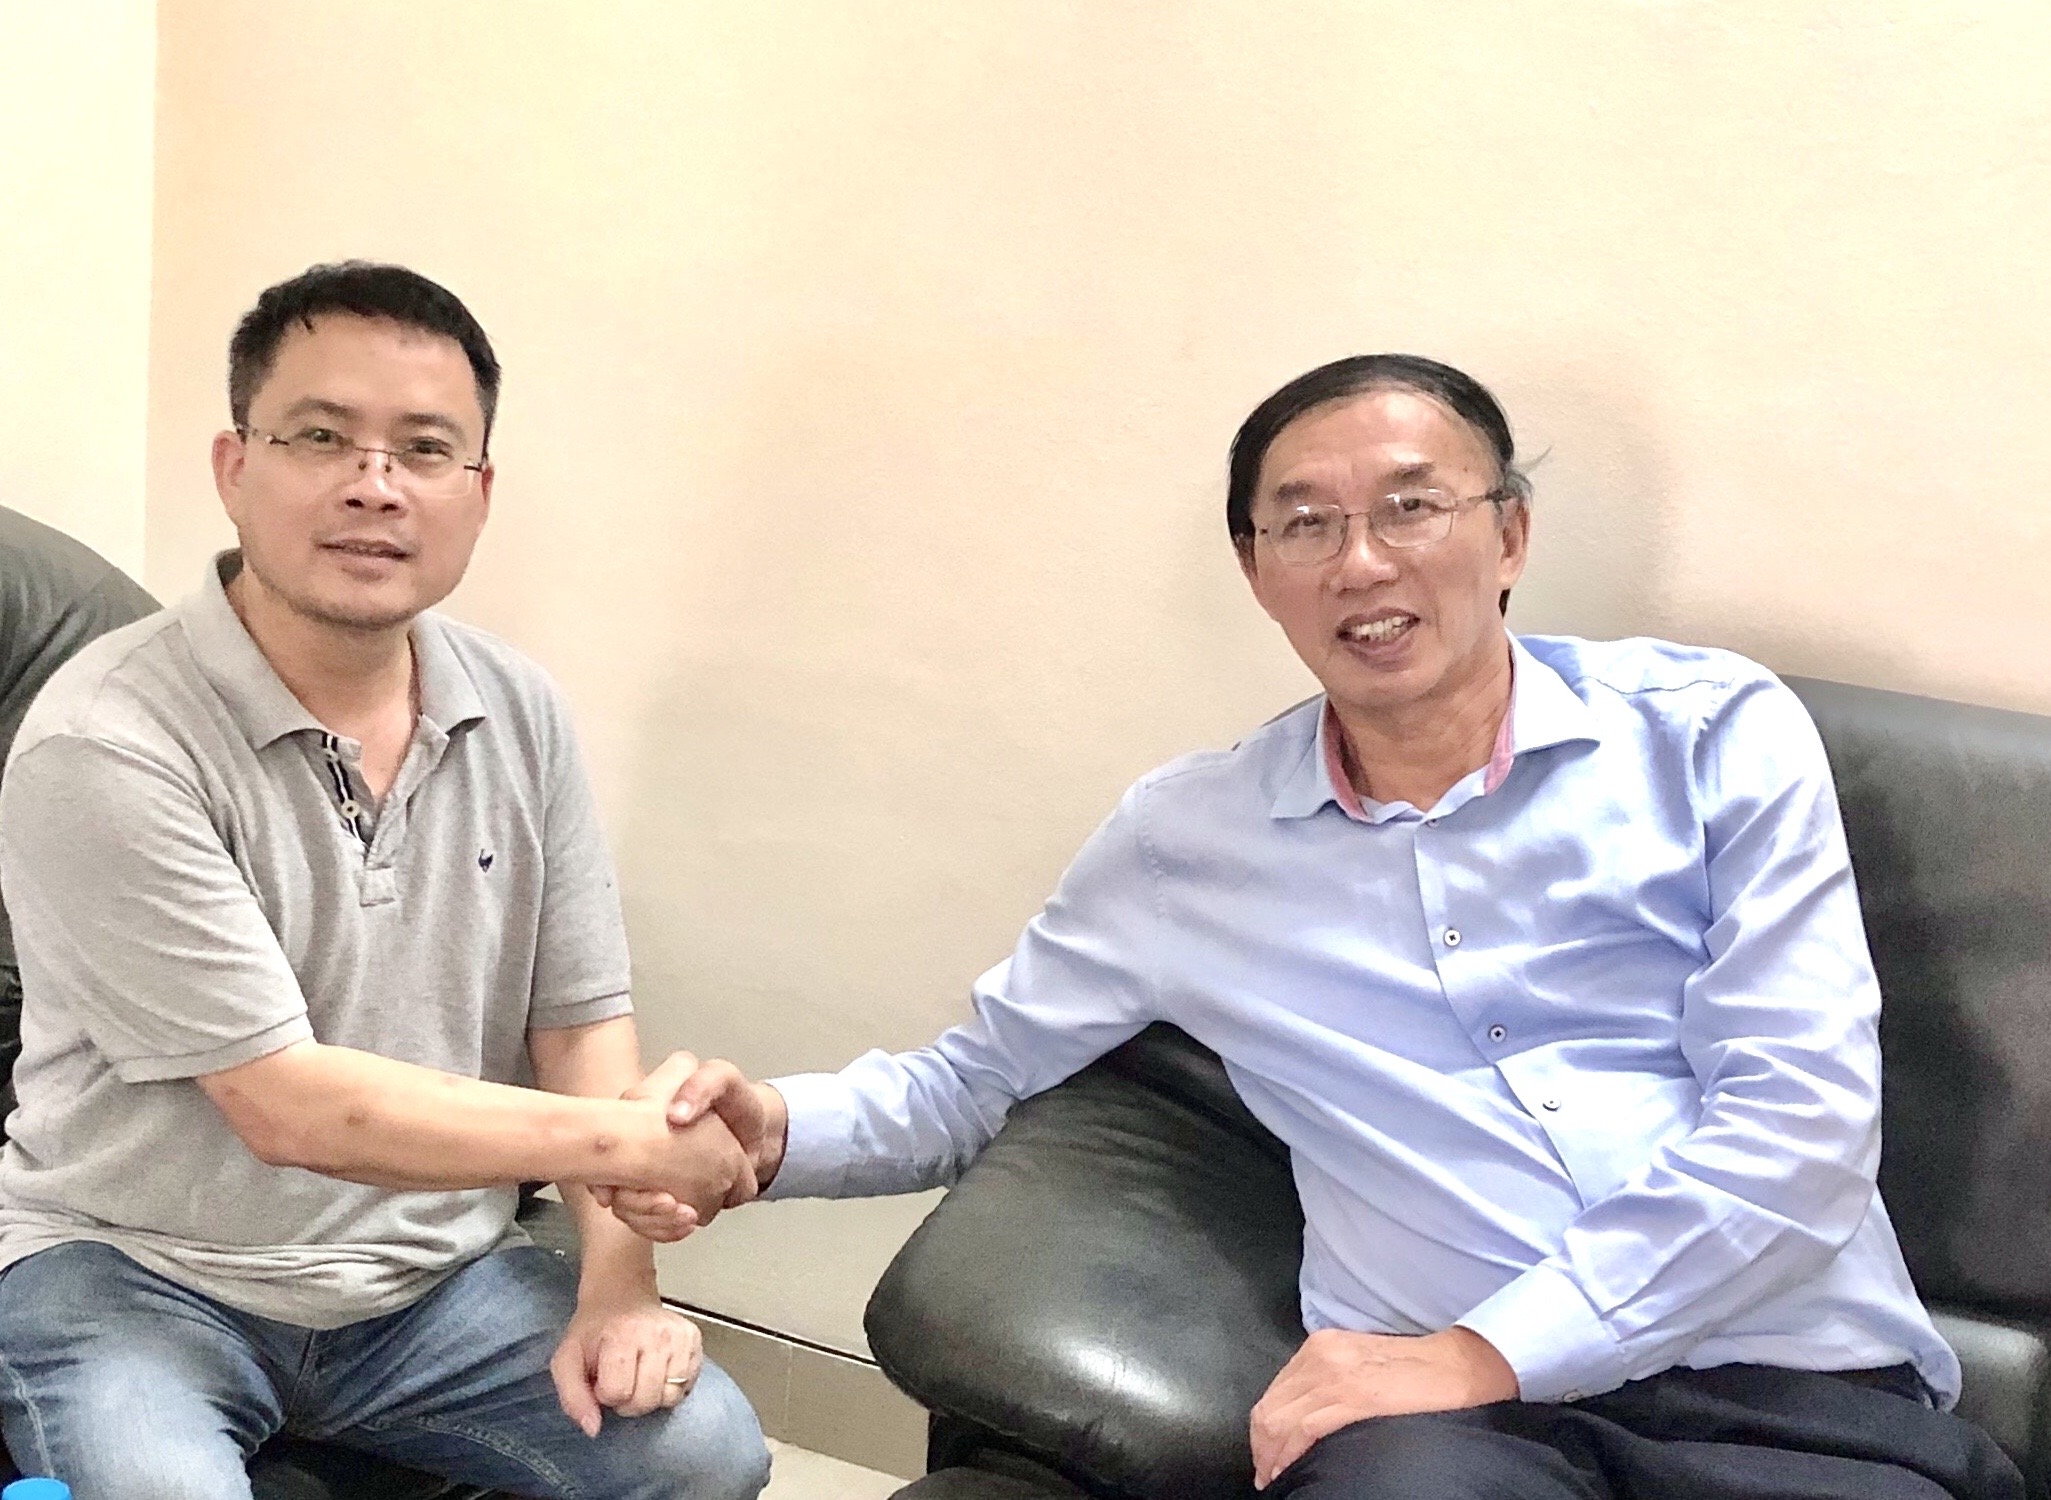 Hiệp hội Phân bón Việt Nam đón chào thành viên mới: Công ty CP Công nghệ sinh học Biowish Việt Nam